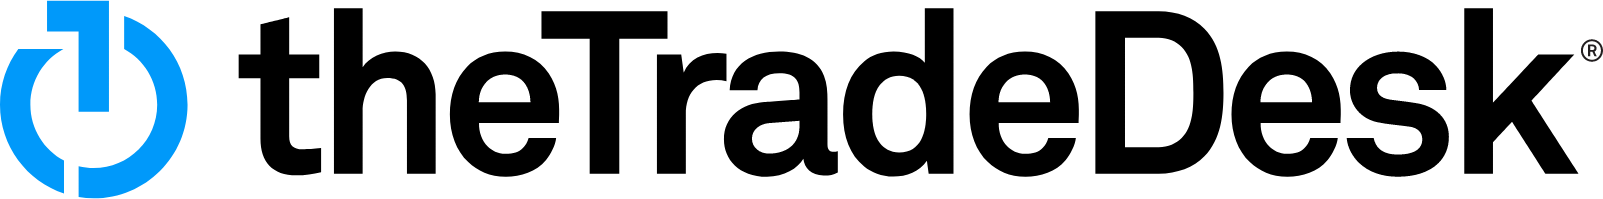 The Trade Desk
 logo large (transparent PNG)